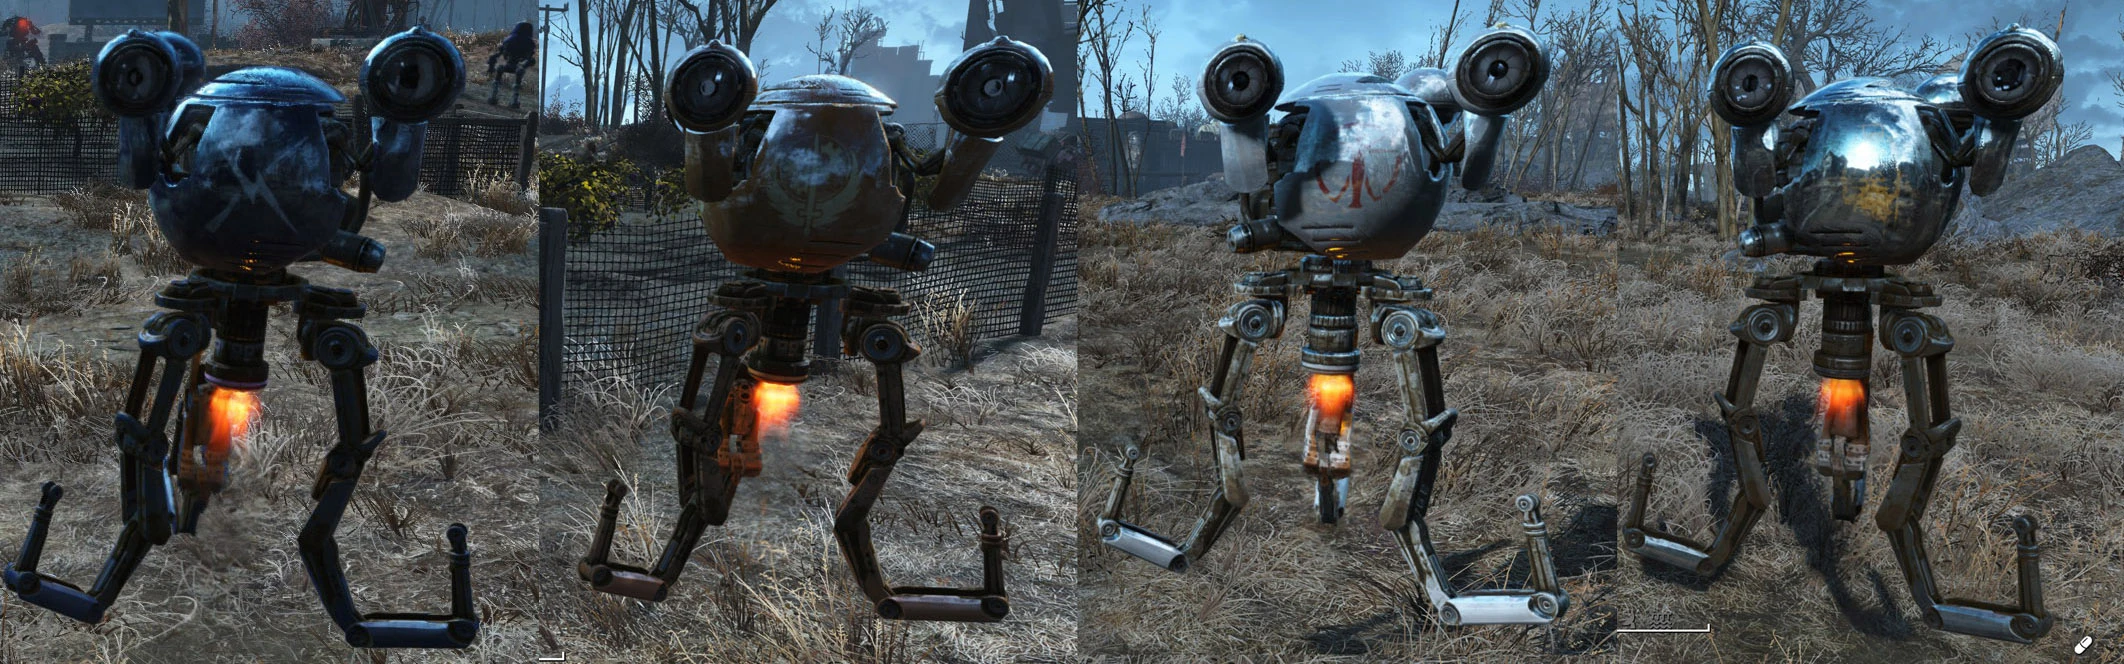 Fallout 4 automatron robot фото 80